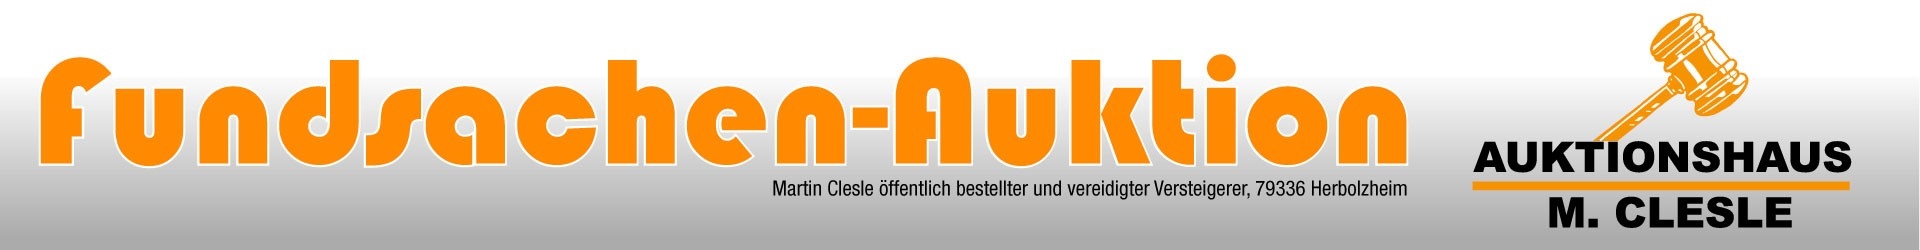 (c) Fundsachen-auktion.de